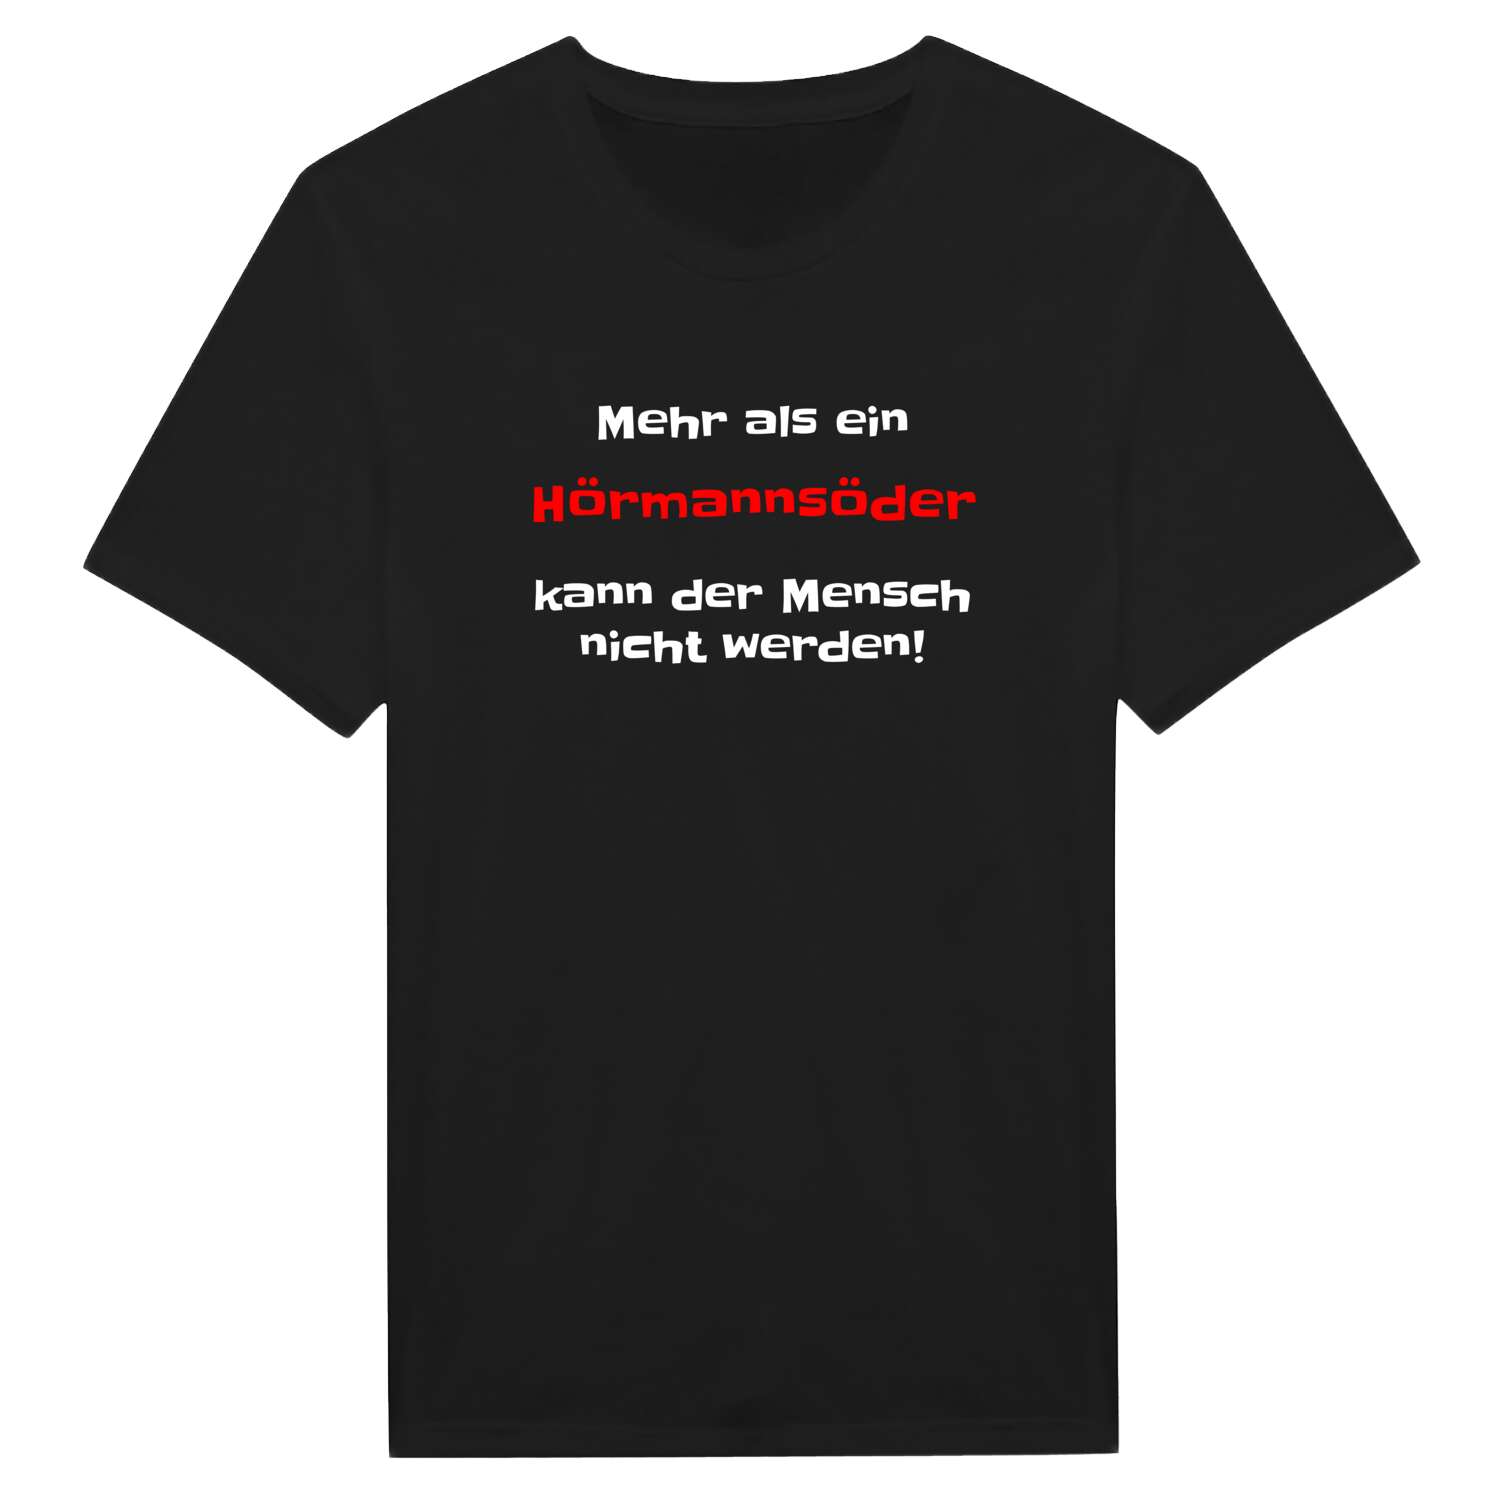 Hörmannsöd T-Shirt »Mehr als ein«